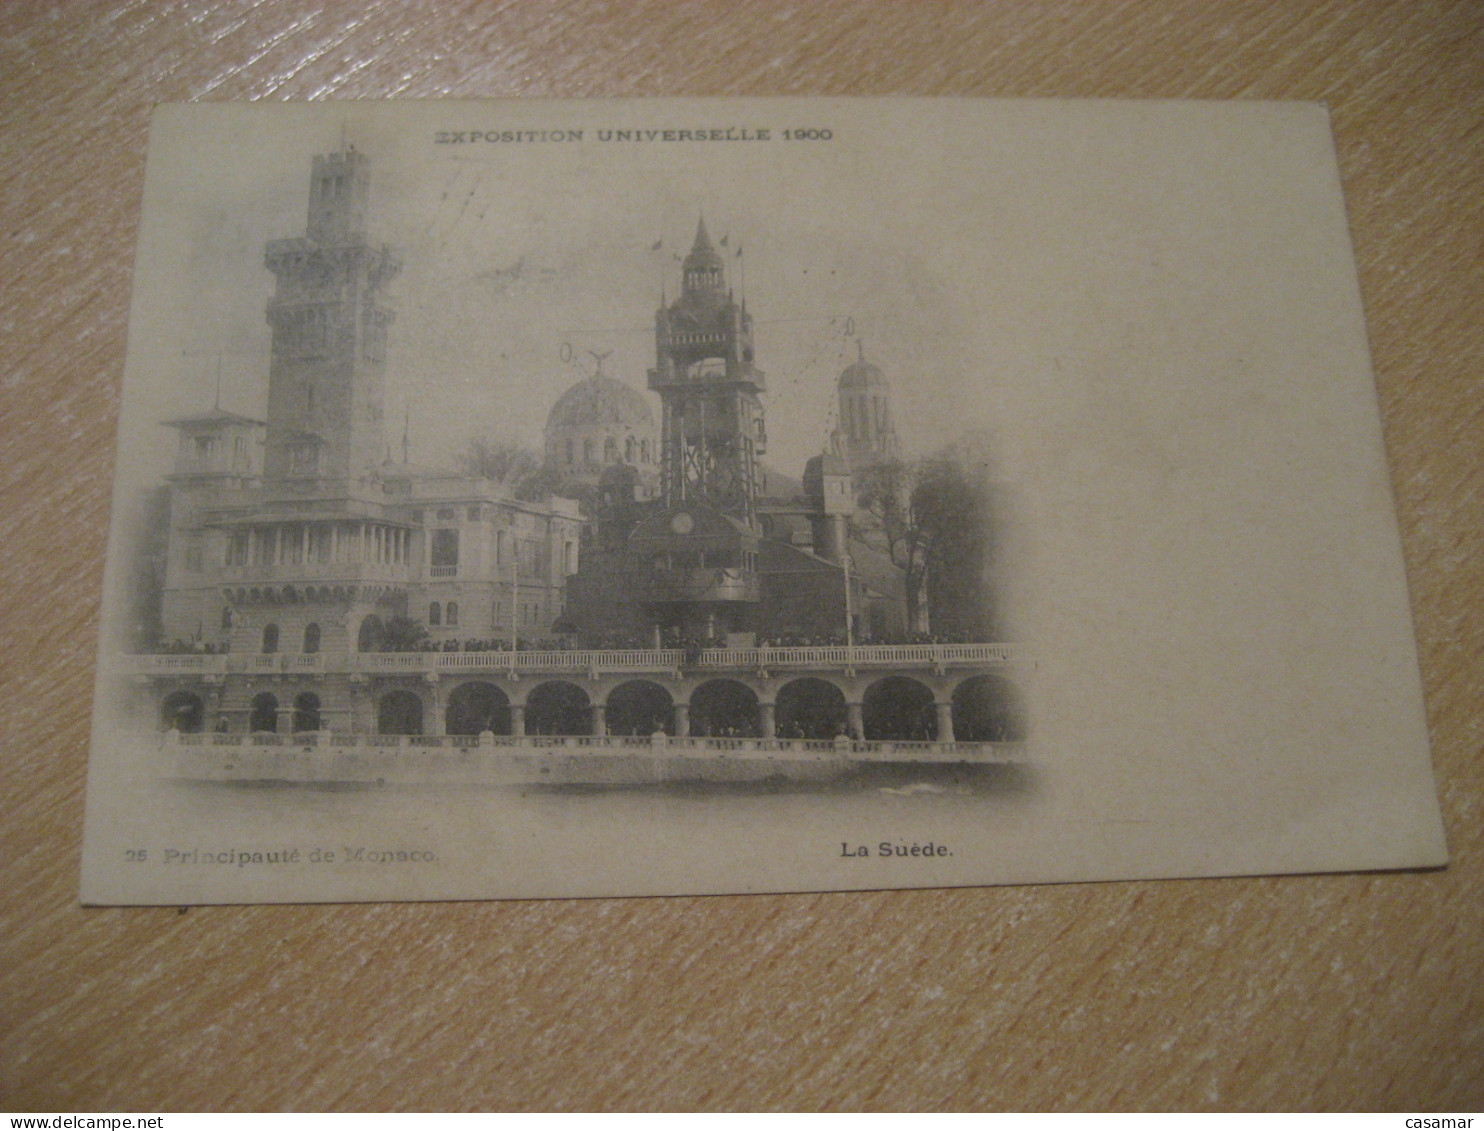 PARIS 1900 Universal Exposition Cancel To Montpellier Principaute De Monaco La Suede Postcard FRANCE Expo Universelle - 1900 – Paris (Frankreich)